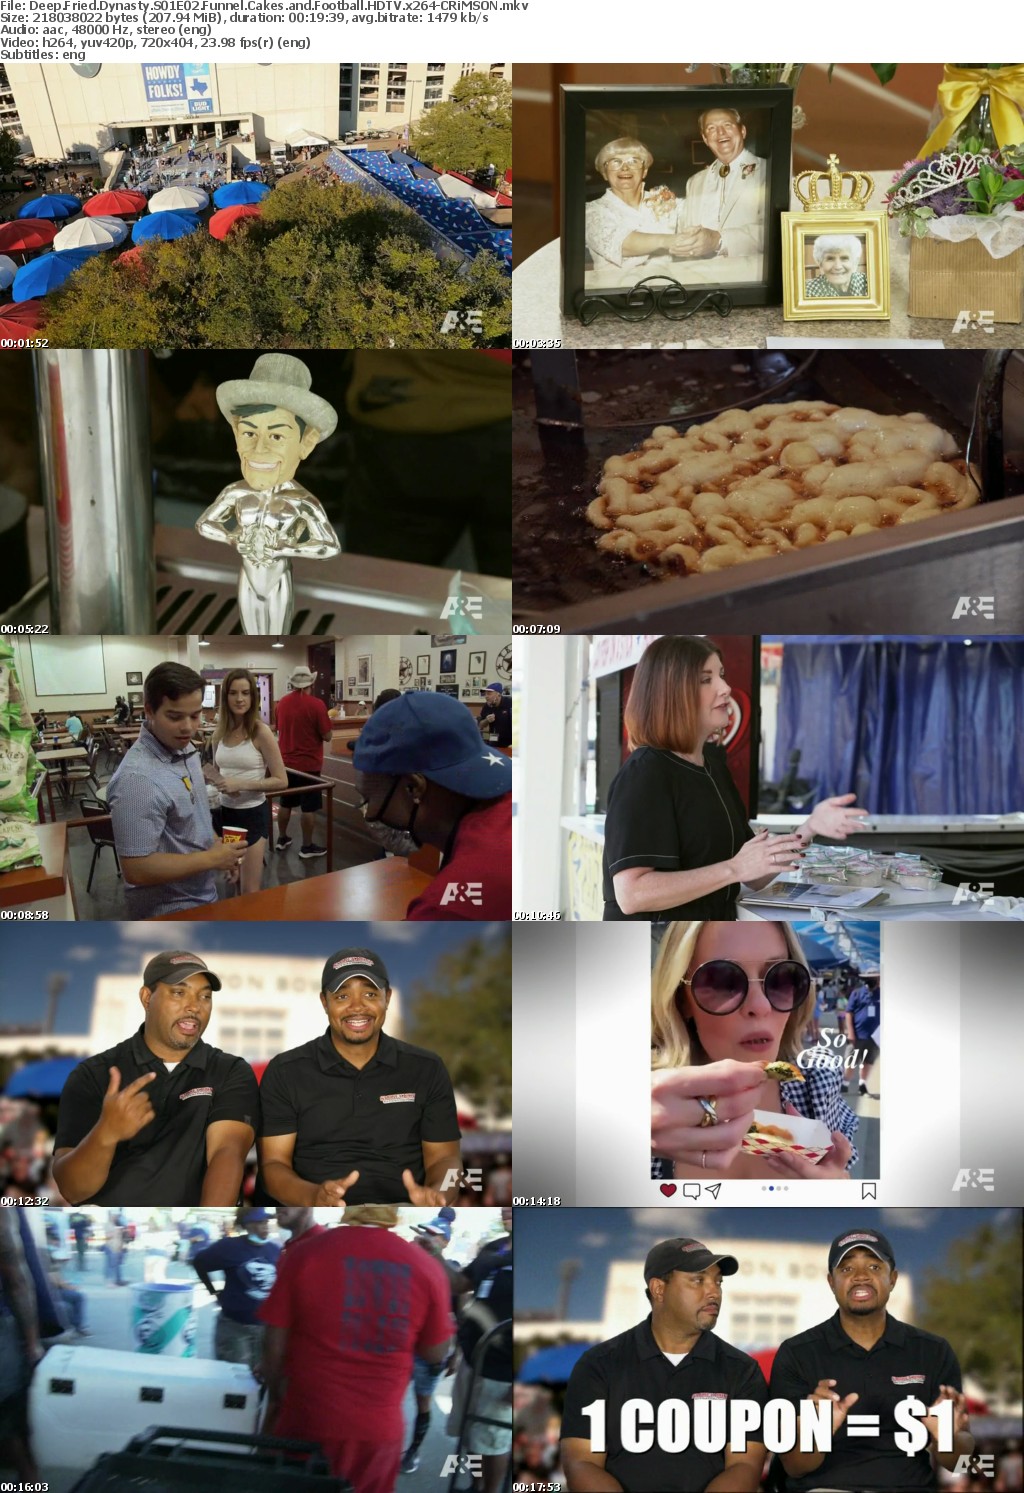 Deep Fried Dynasty S01E02 Funnel Cakes and Football HDTV x264-CRiMSON